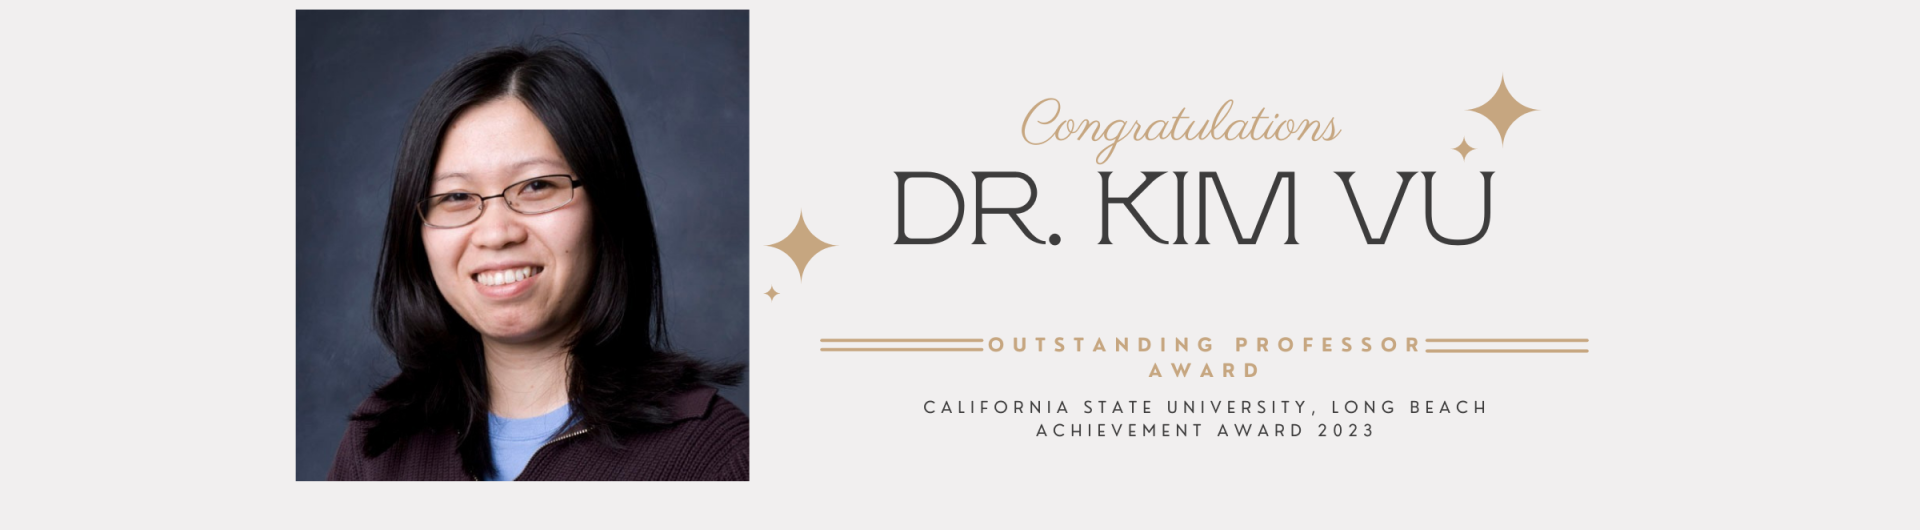 Congratulation - Dr. Kim Vu - Banner